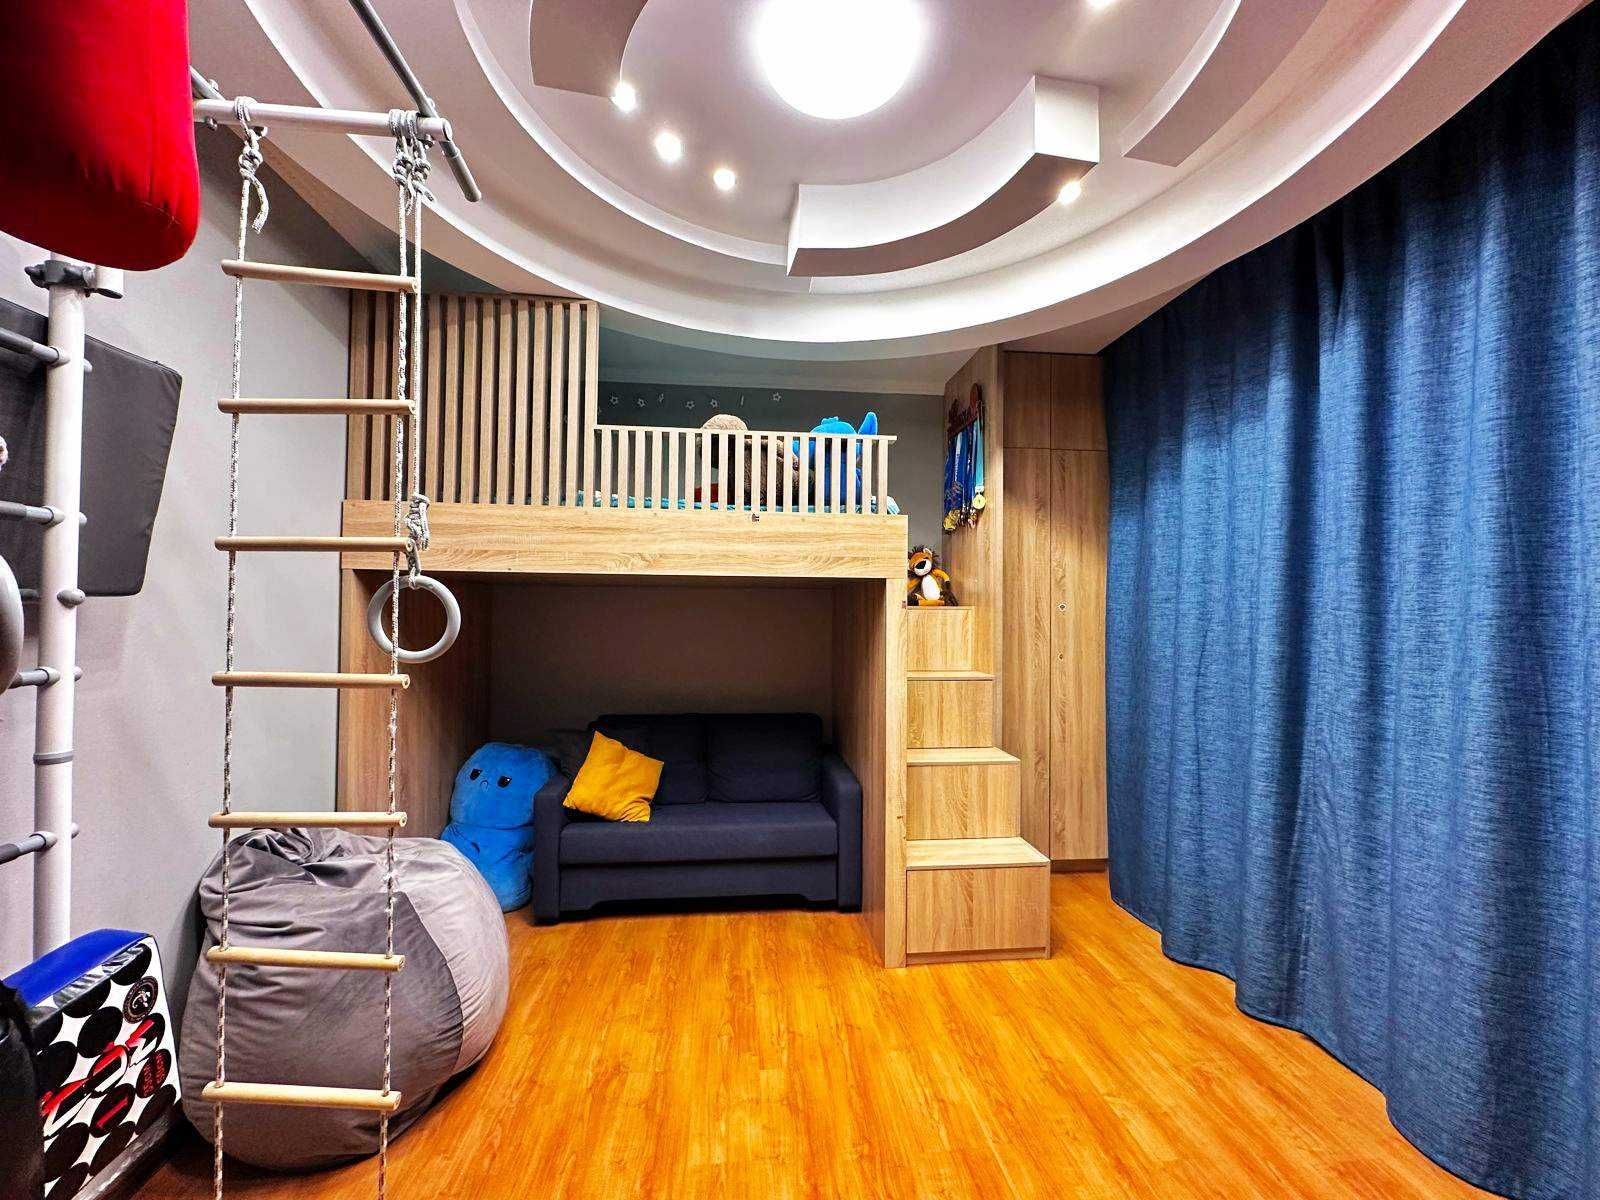 Продам отличную трехкомнатную квартиру 110,5 кв.м. в ЖК "Алтын Заман".